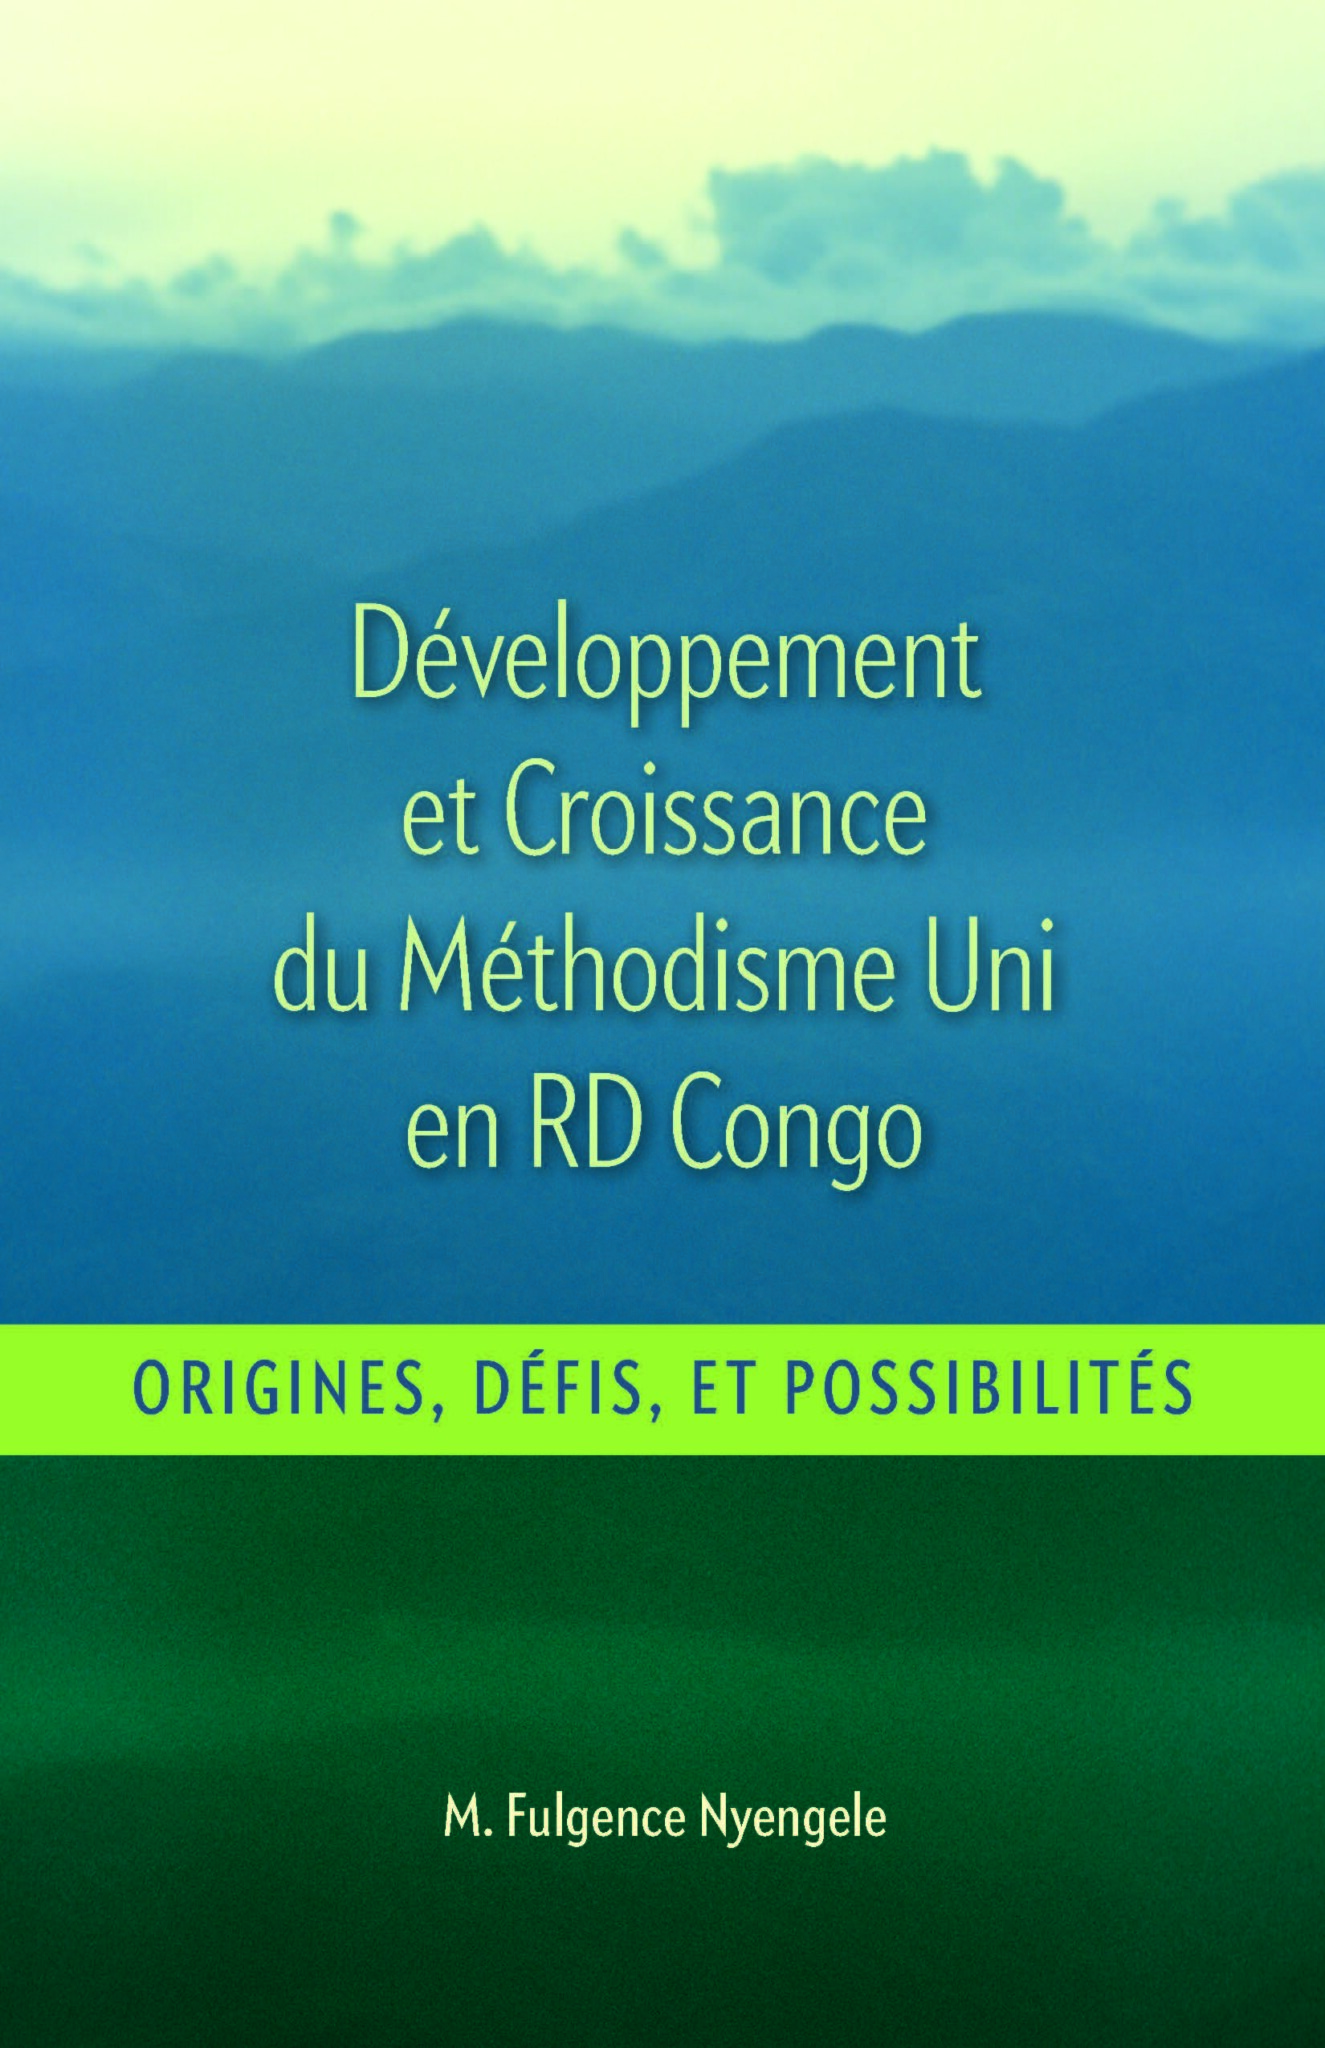 Développement et Croissance du Methodisme Uni en RD Congo